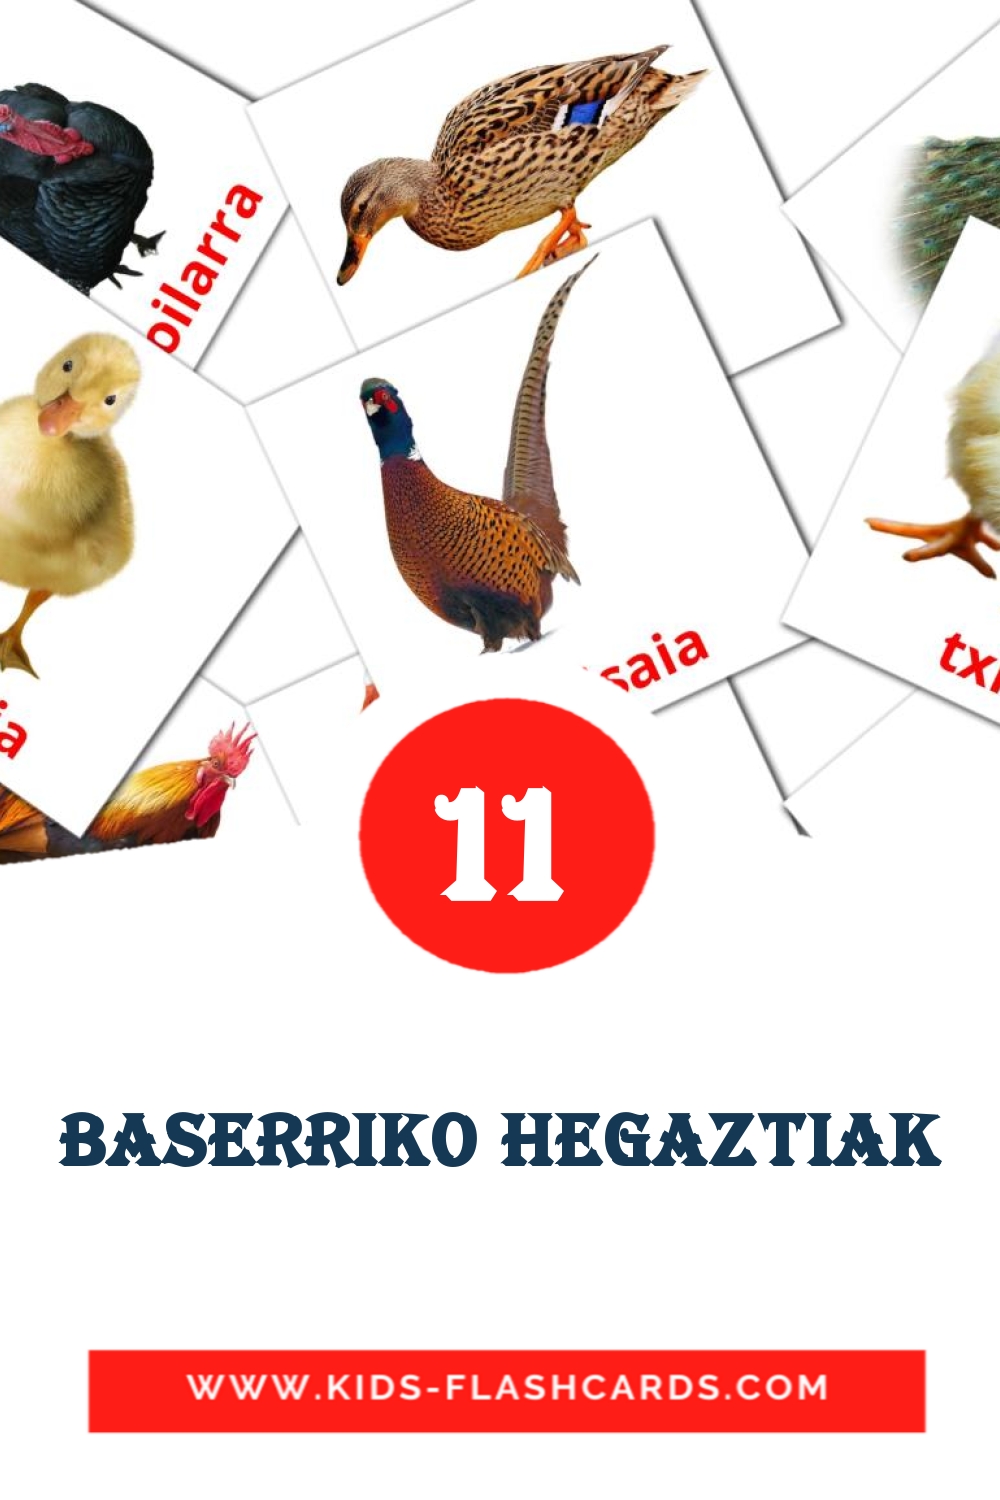 Baserriko hegaztiak на баскском для Детского Сада (11 карточек)